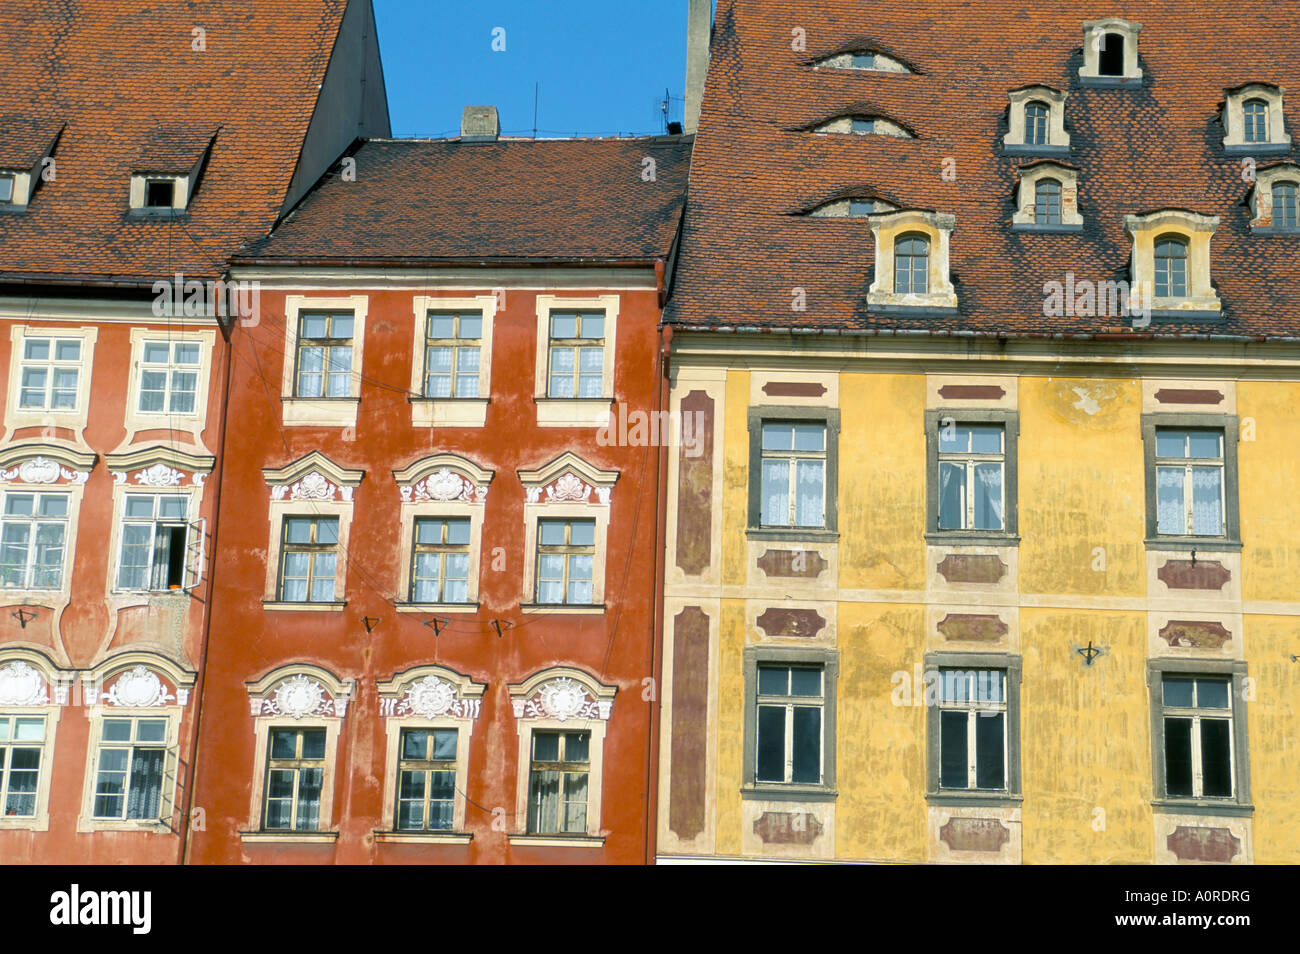 Mittelalterlicher Markt quadratische Gebäude Cheb Böhmen Tschechien Europa Stockfoto